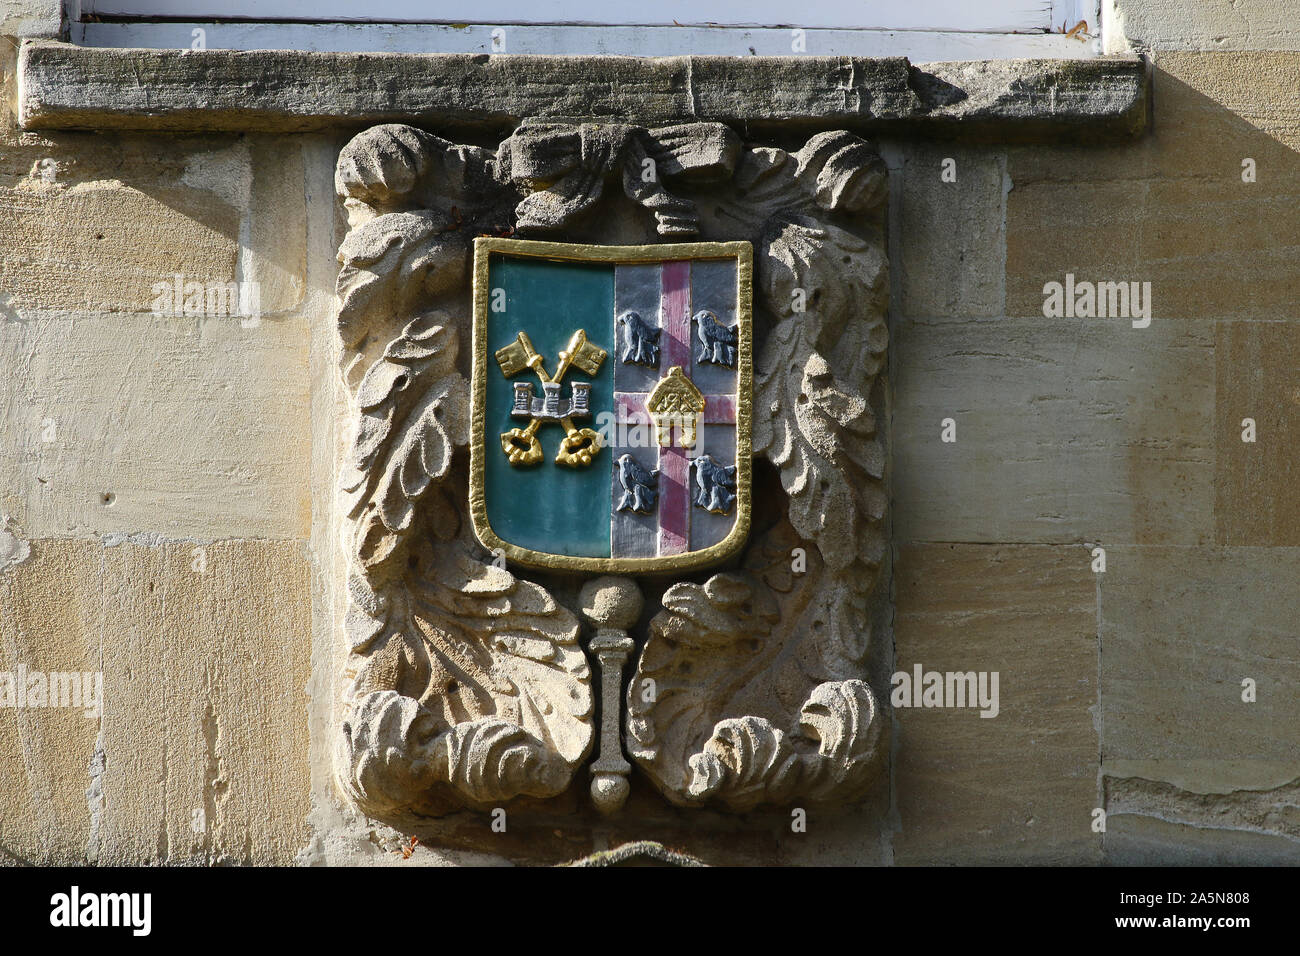 Escudo de St Peter's College de la Universidad de Oxford con Cross Keys, un castillo, mitra y 4 martlets o genérico de aves y una cruz roja Foto de stock